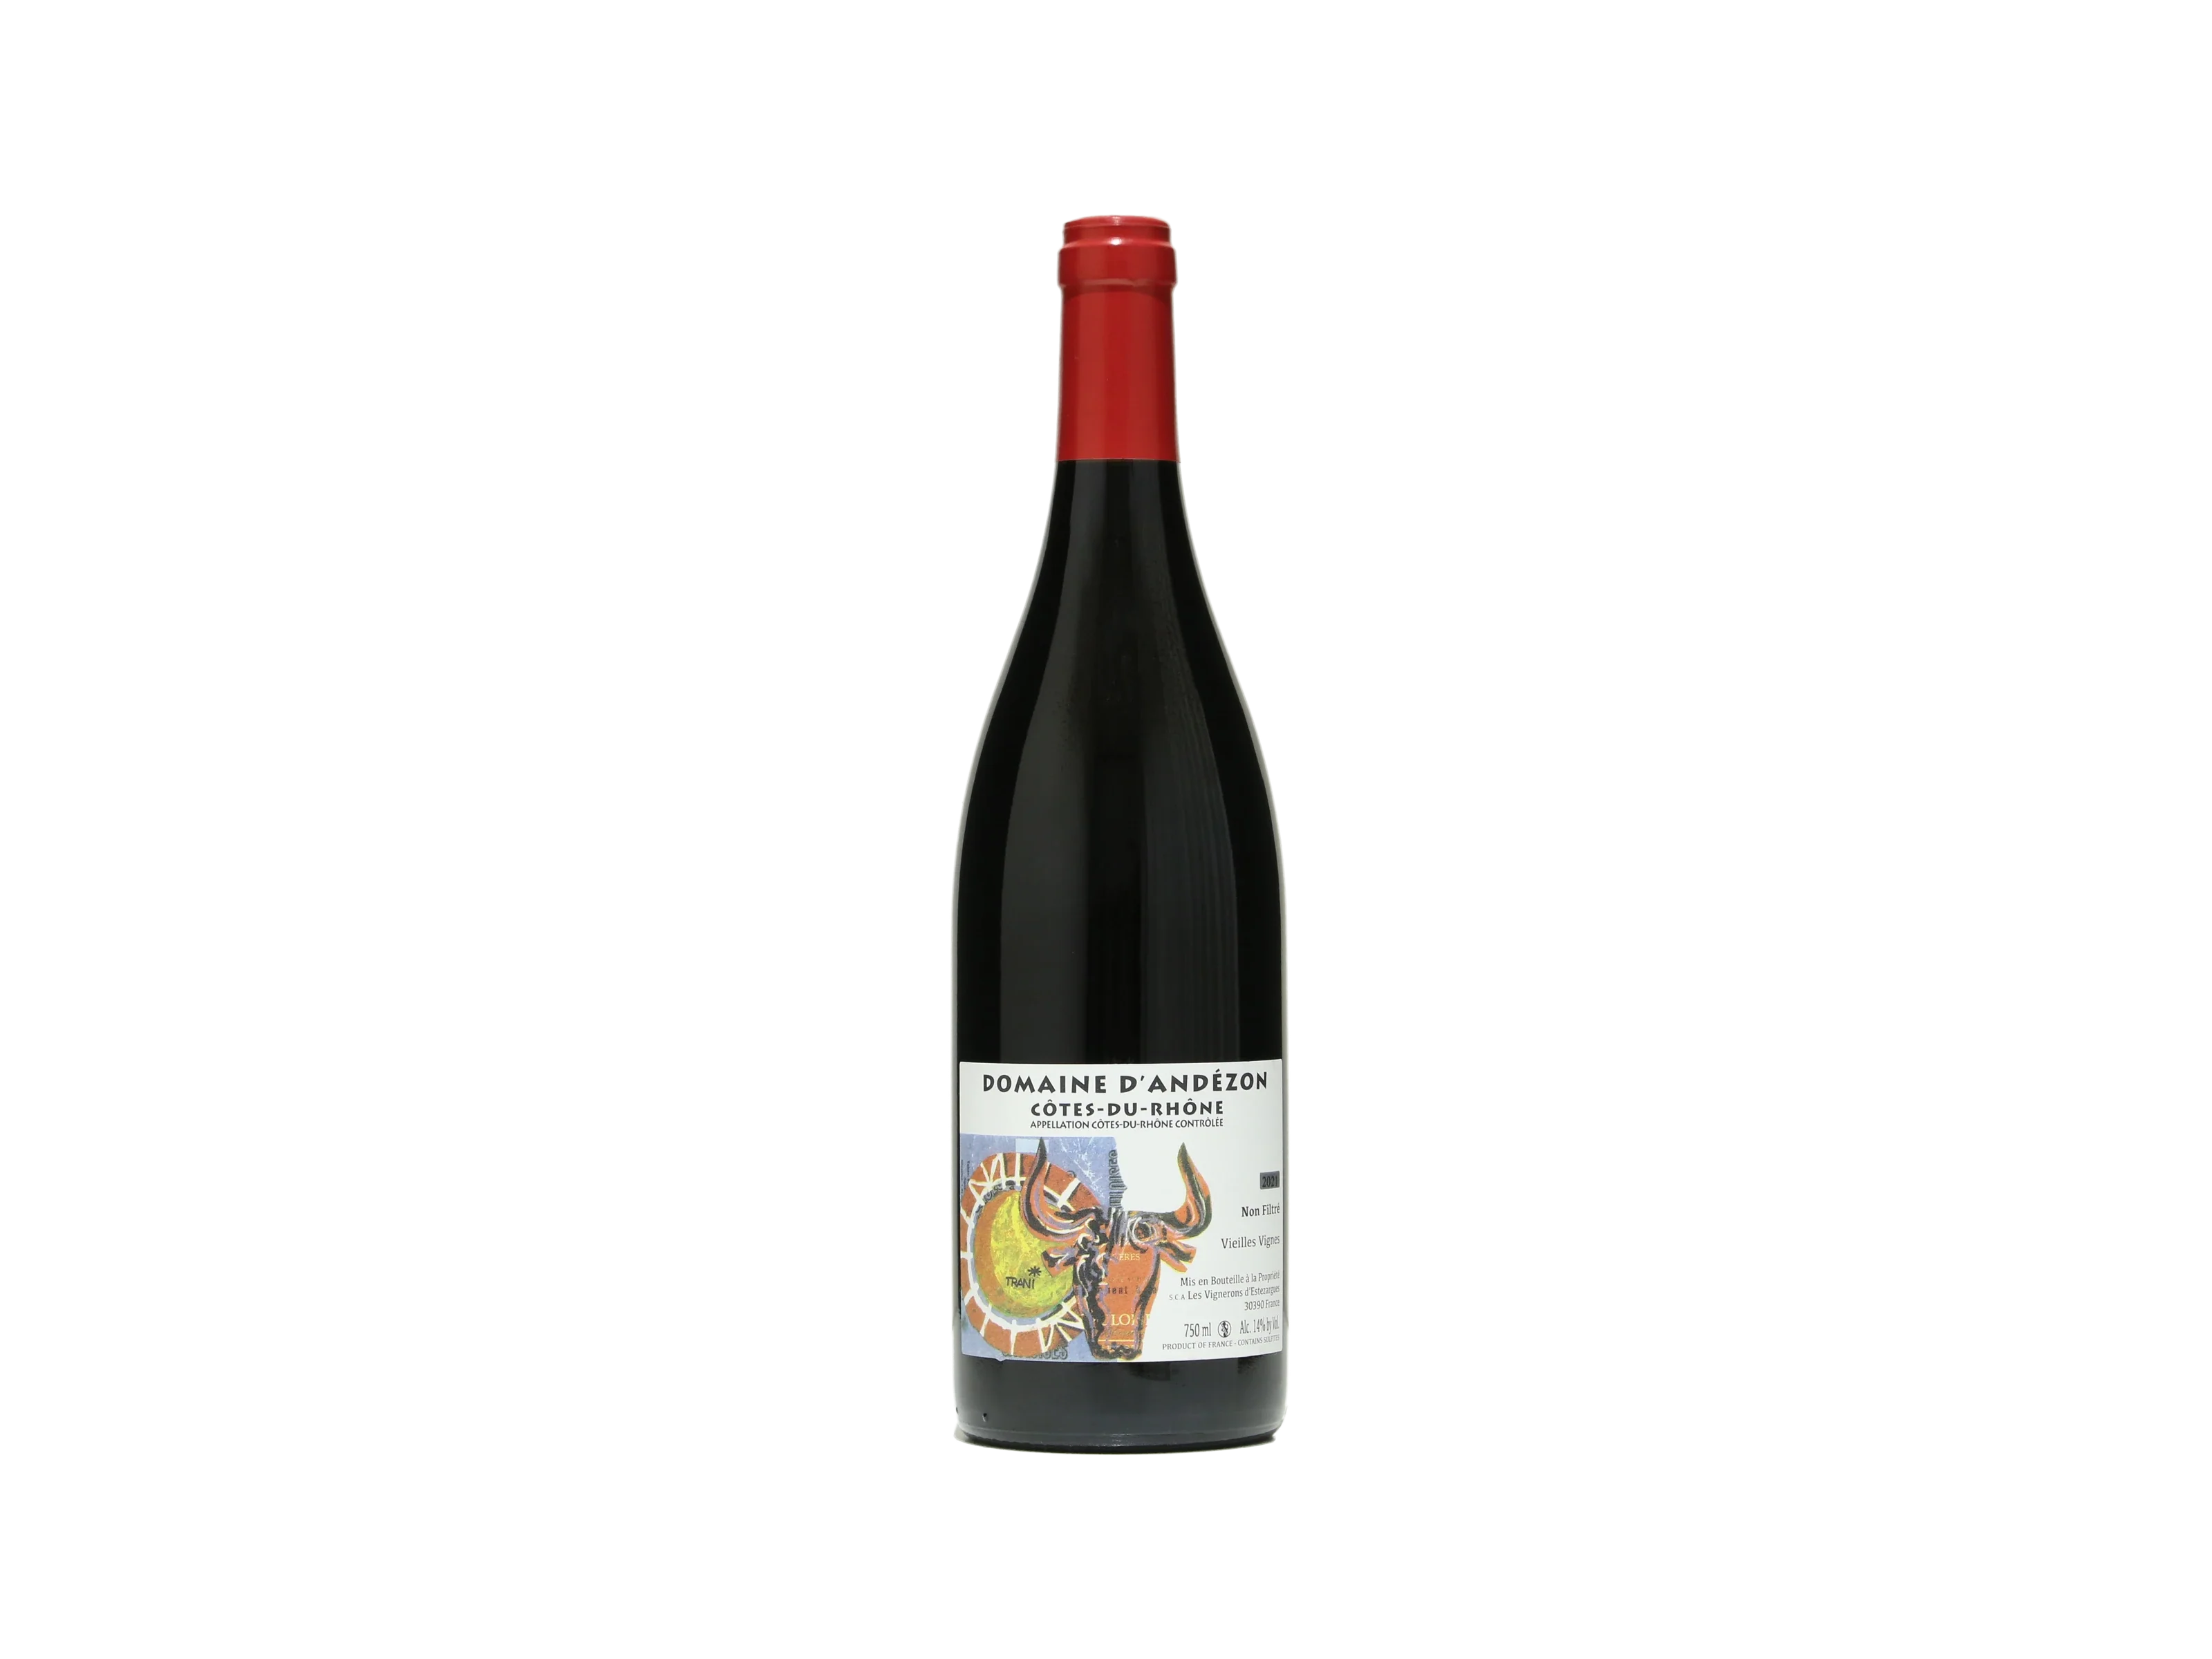 赤ワイン フランス ドメーヌ ダンデゾン コート デュ ローヌ